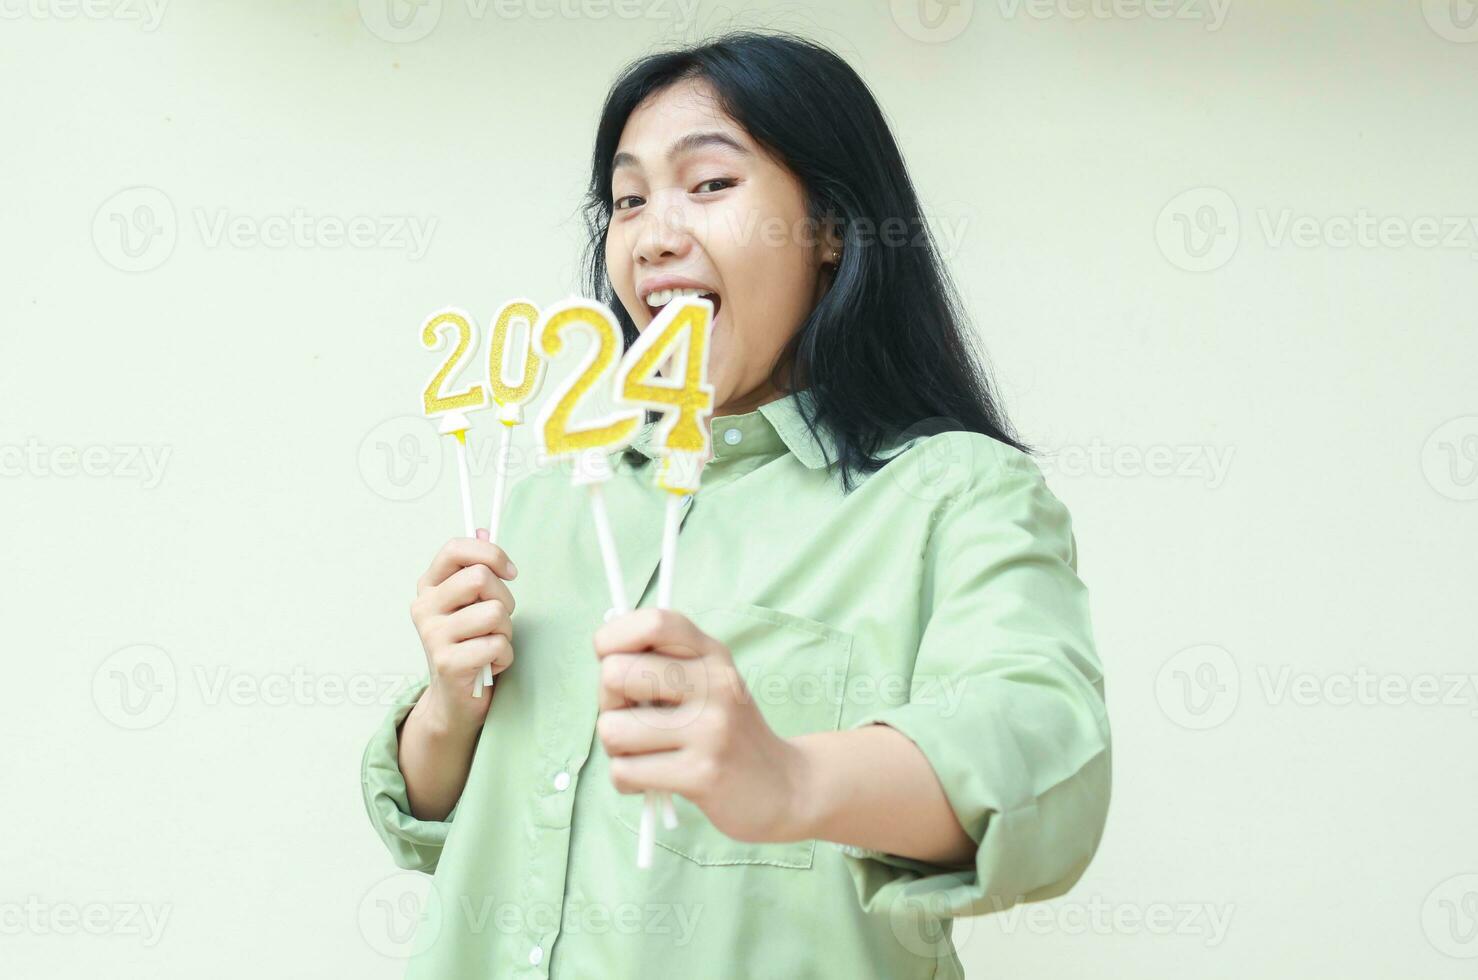 geschokt Aziatisch jong vrouw verhogen arm met aantal 24 van 2024 aantal kaarsen Holding Aan hand, vrouw hipster vervelend groen gewoontjes over- grootte shirt, geïsoleerd Aan wit foto